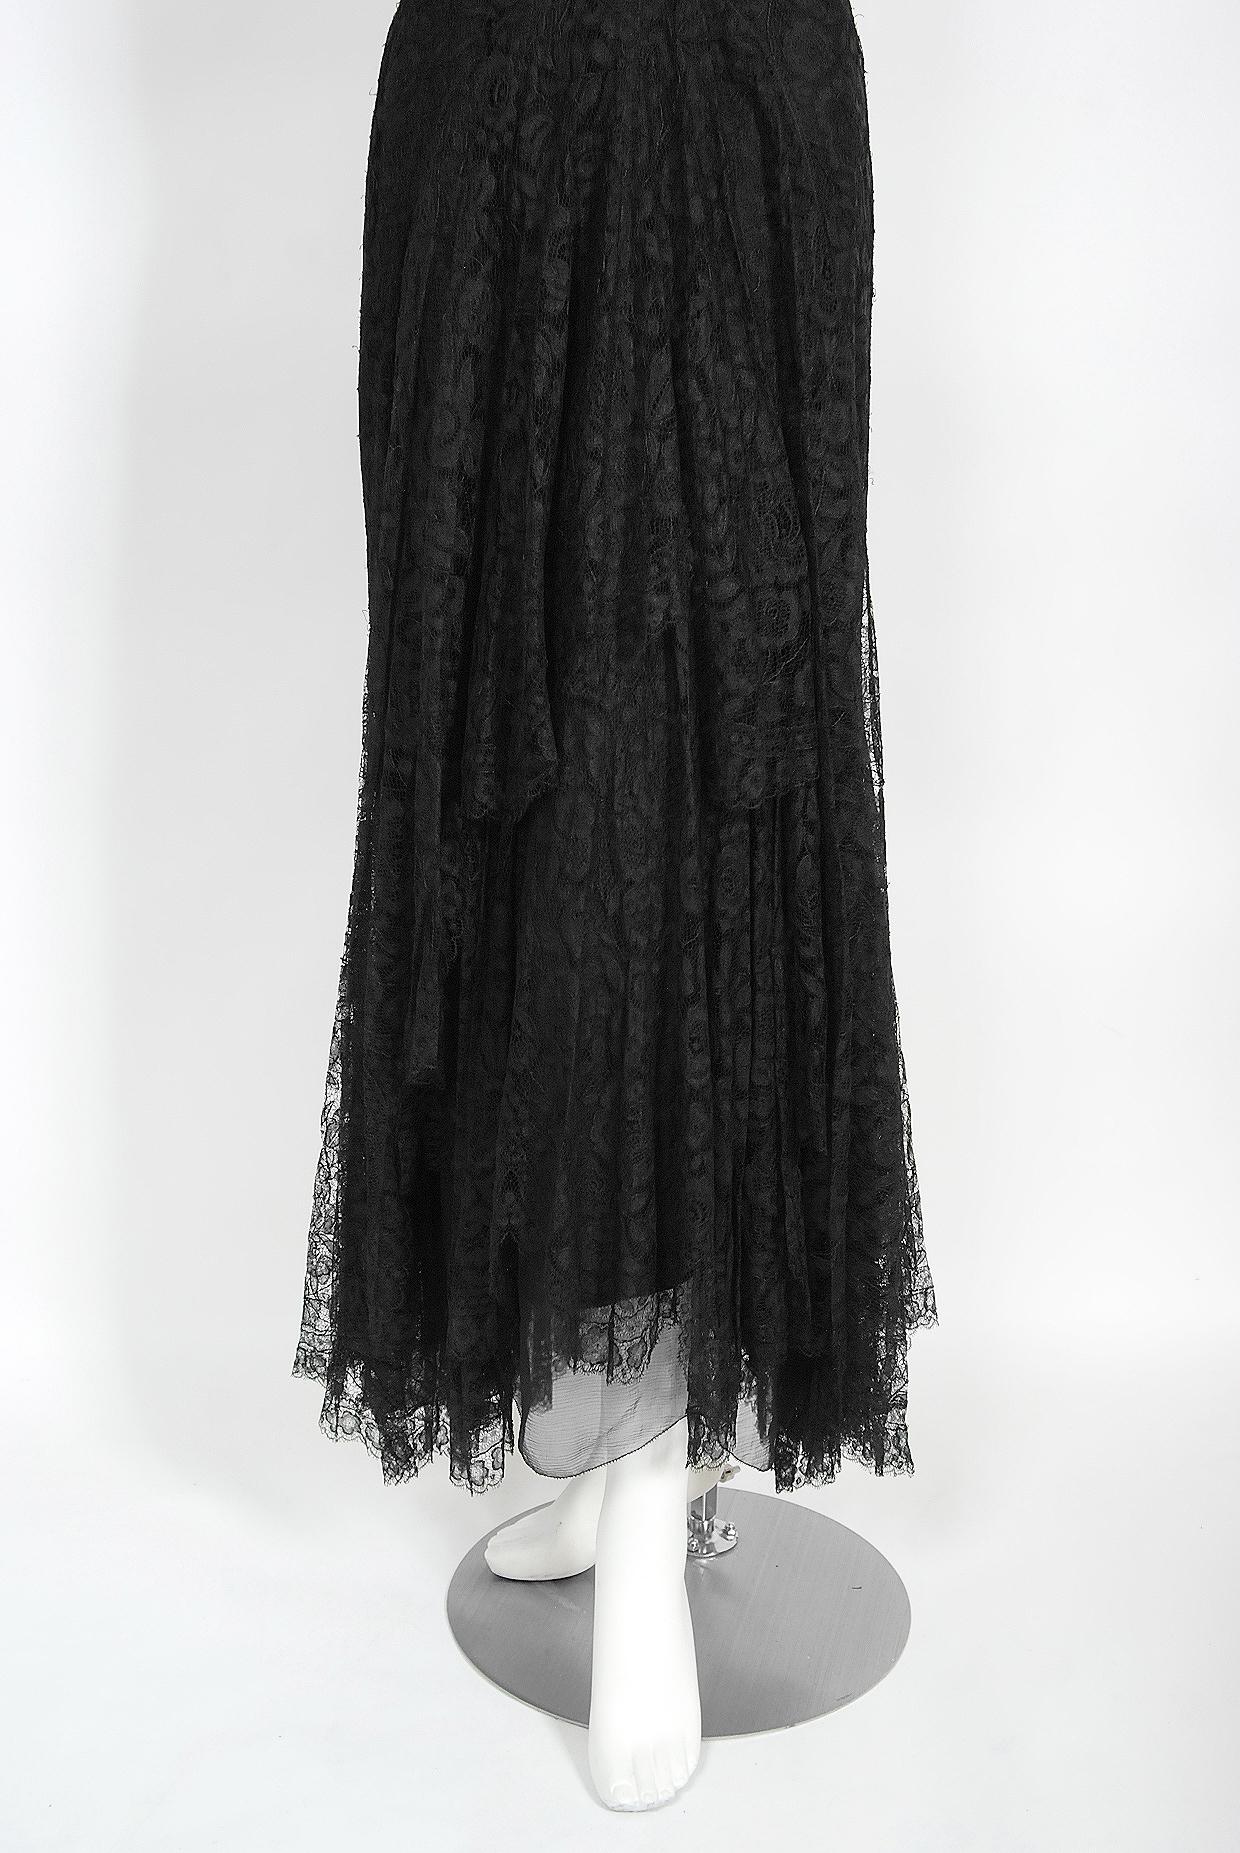 Vintage 1930's Bonwit Teller Couture Black Scalloped Lace Appliqué Bias-Cut Gown For Sale 1